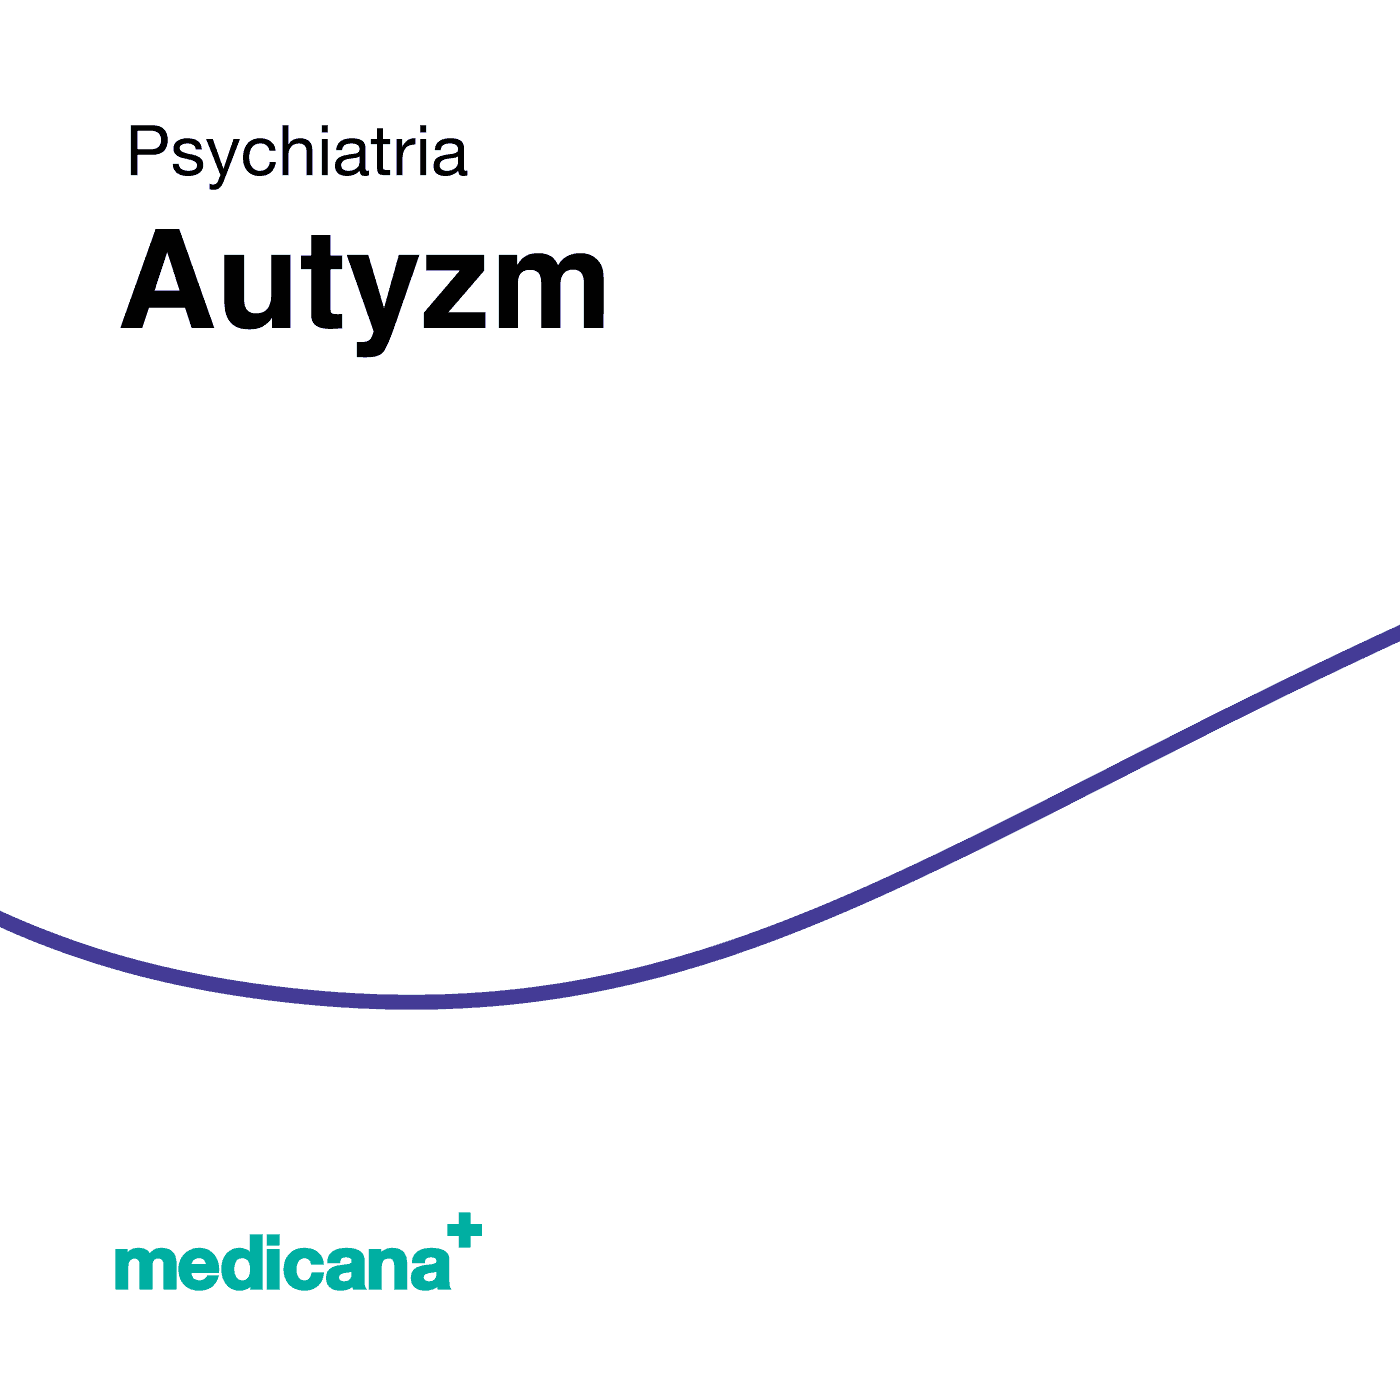 Grafika, białe tło z granatową kreską, czarnym napisem Psychiatria - Autyzm i logo Medicana Centrum Terapii Medyczna Marihuana w lewym dolnym rogu.